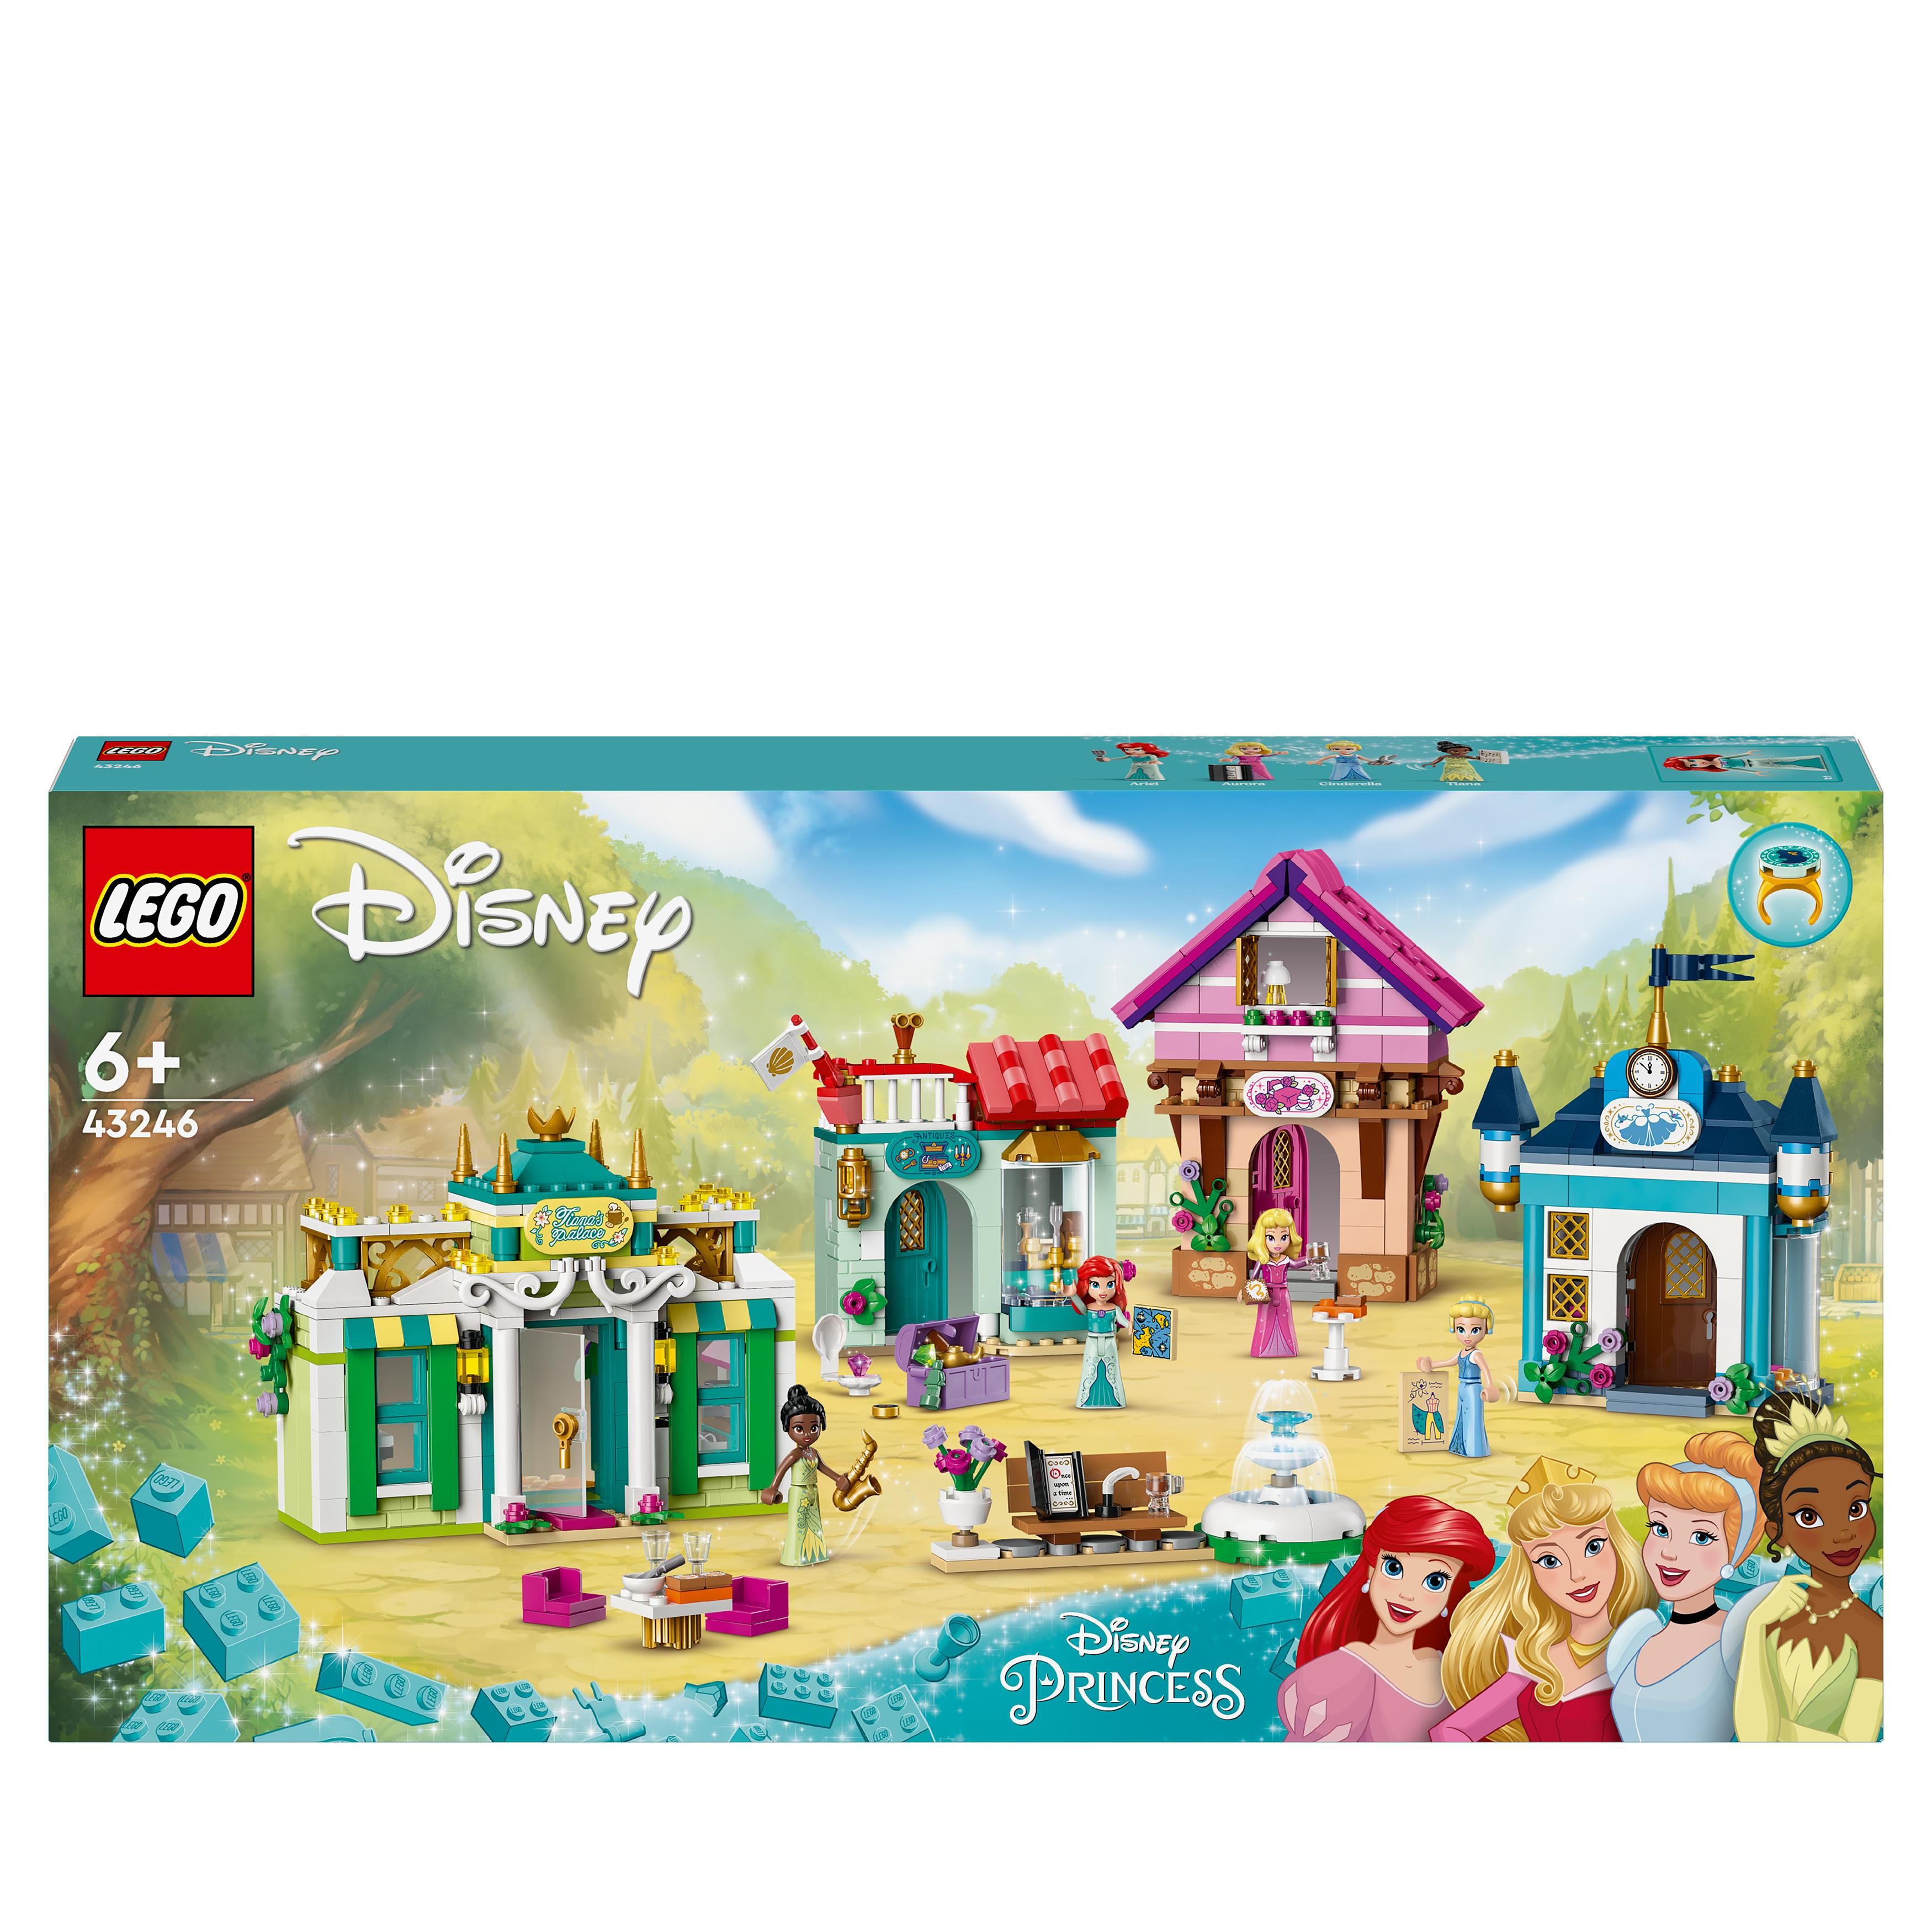 LEGO Disney Princess 43233 La Carrozza dei Cavalli di Belle Giochi